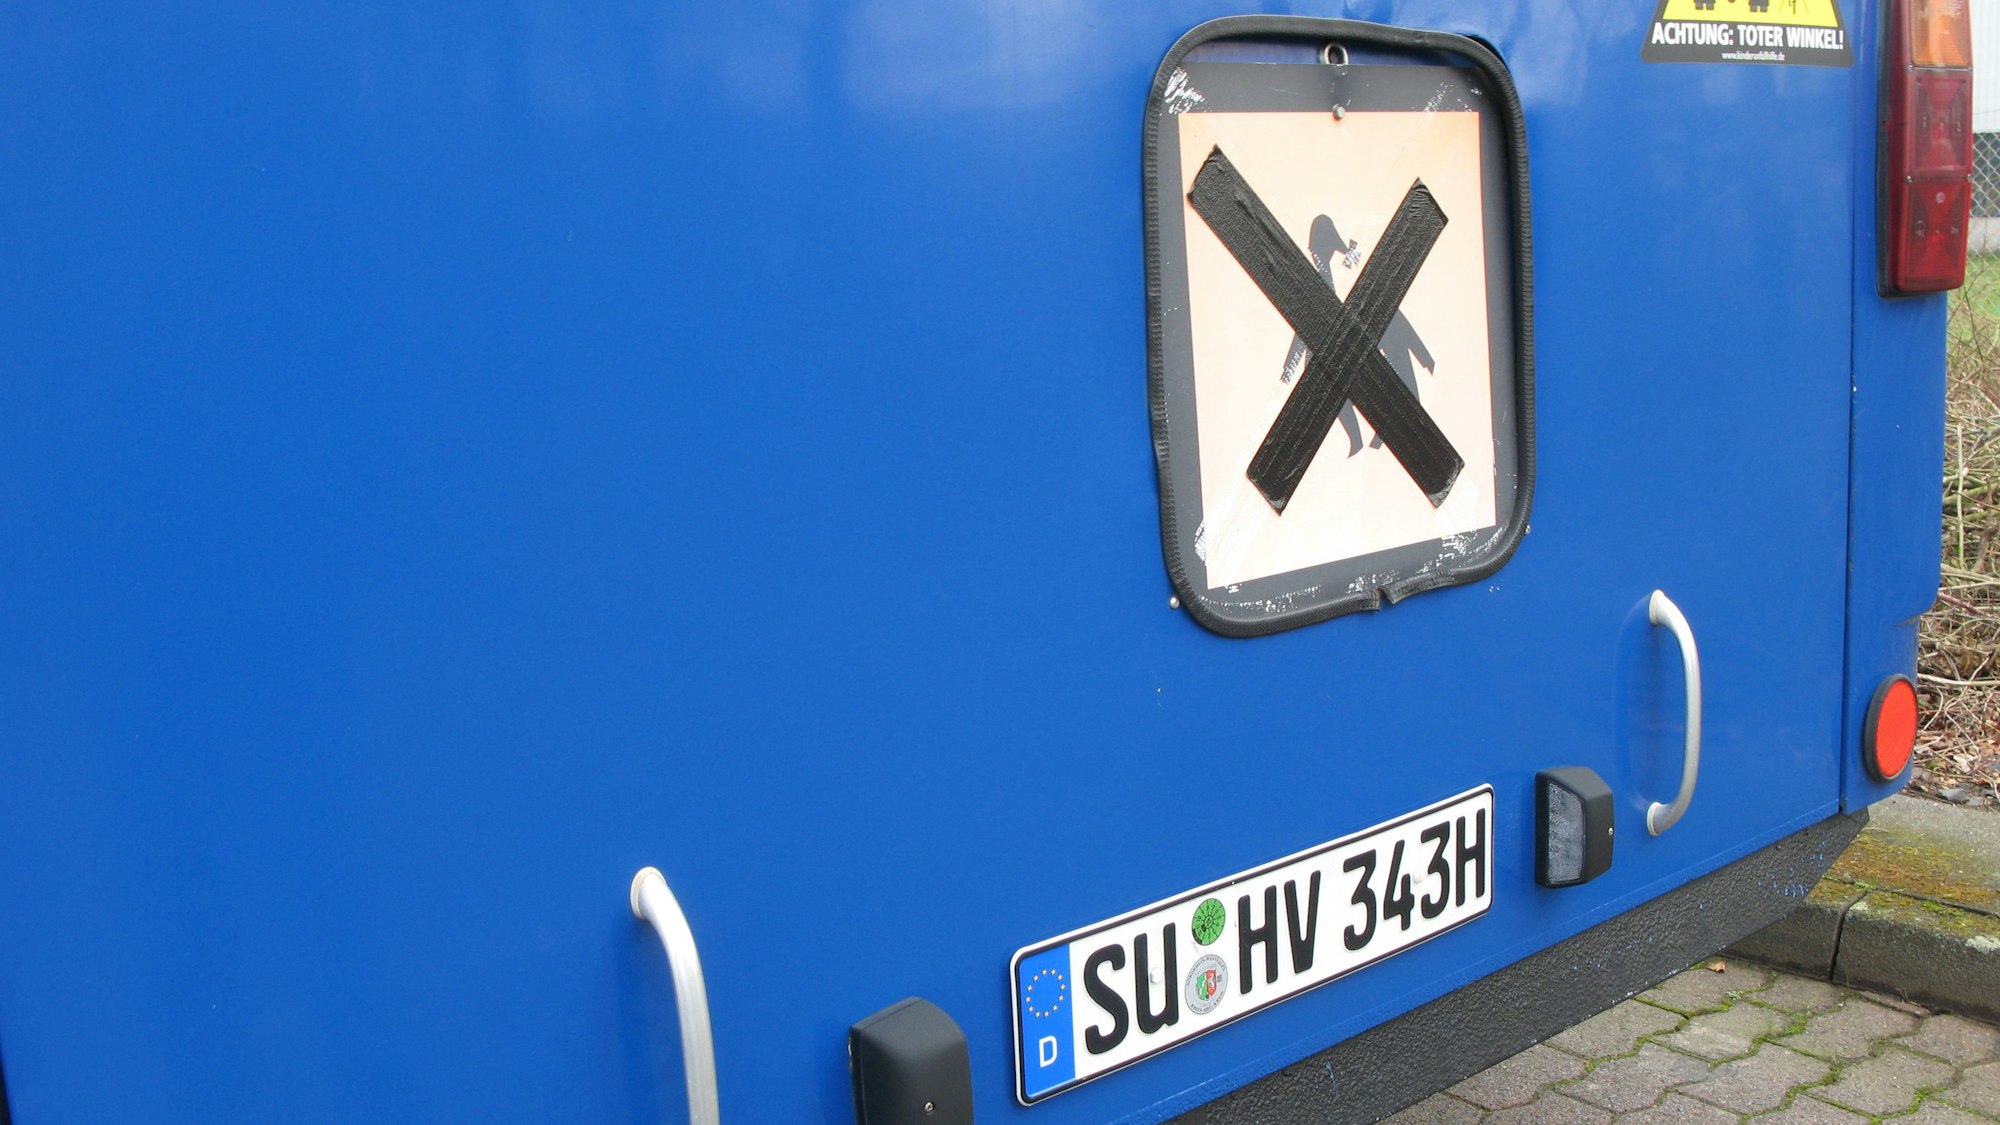 An Heck des Oldtimerbusses ist oberhalb des H-Kennzeichens ein altes Schulbusschild angebracht.